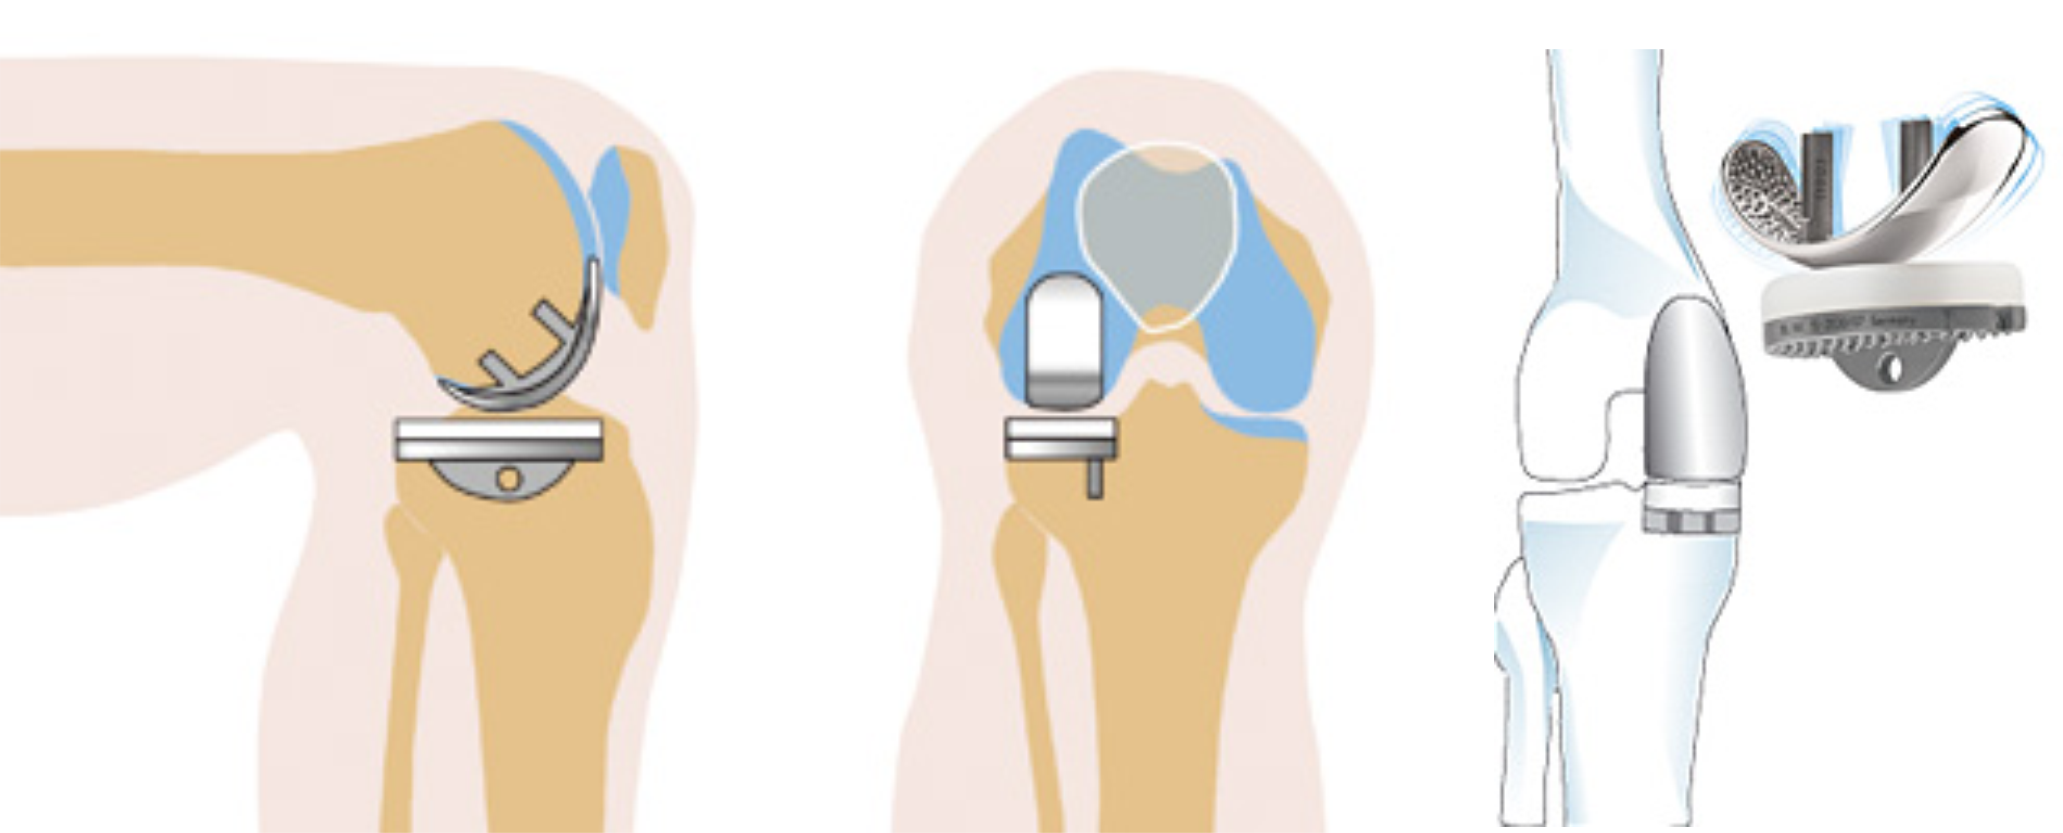 Операция по замене сустава на ноге. Модульный эндопротез коленного сустава цито. Одномыщелковое эндопротезирование коленного сустава. Схема эндопротеза коленного сустава. Эндопротез коленного сустава операция.